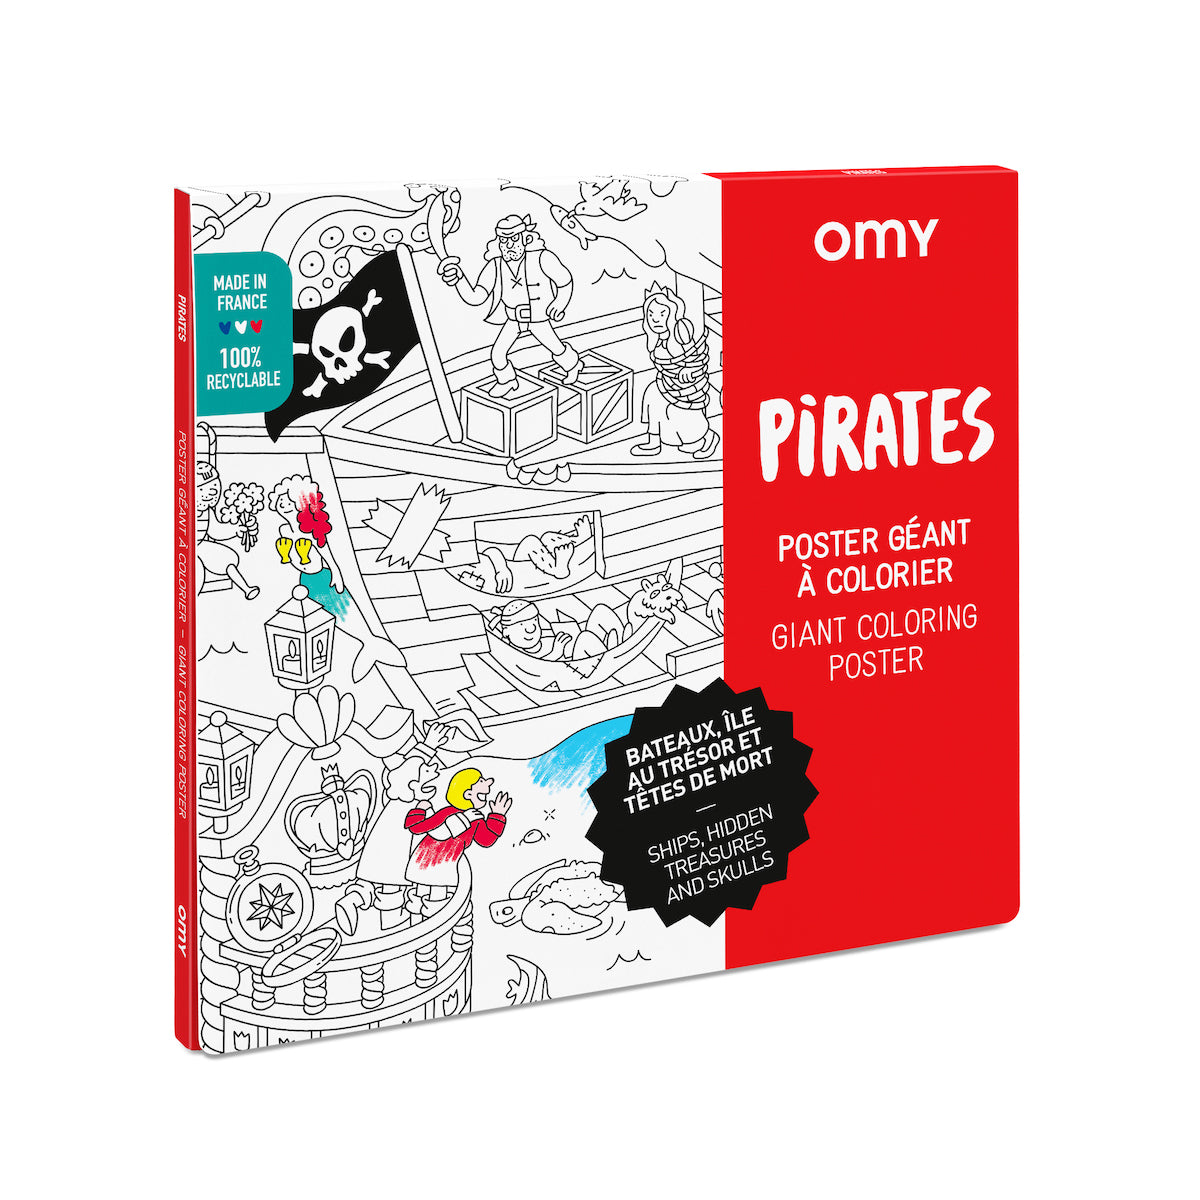 De OMY kleurposter 1 mtr Pirates zorgt voor heel veel uren kleurplezier. Deze grote themakleurplaat neemt je mee in de wondere wereld van piraten. Pak je favoriete viltstiften erbij en ga op avontuur! VanZus.